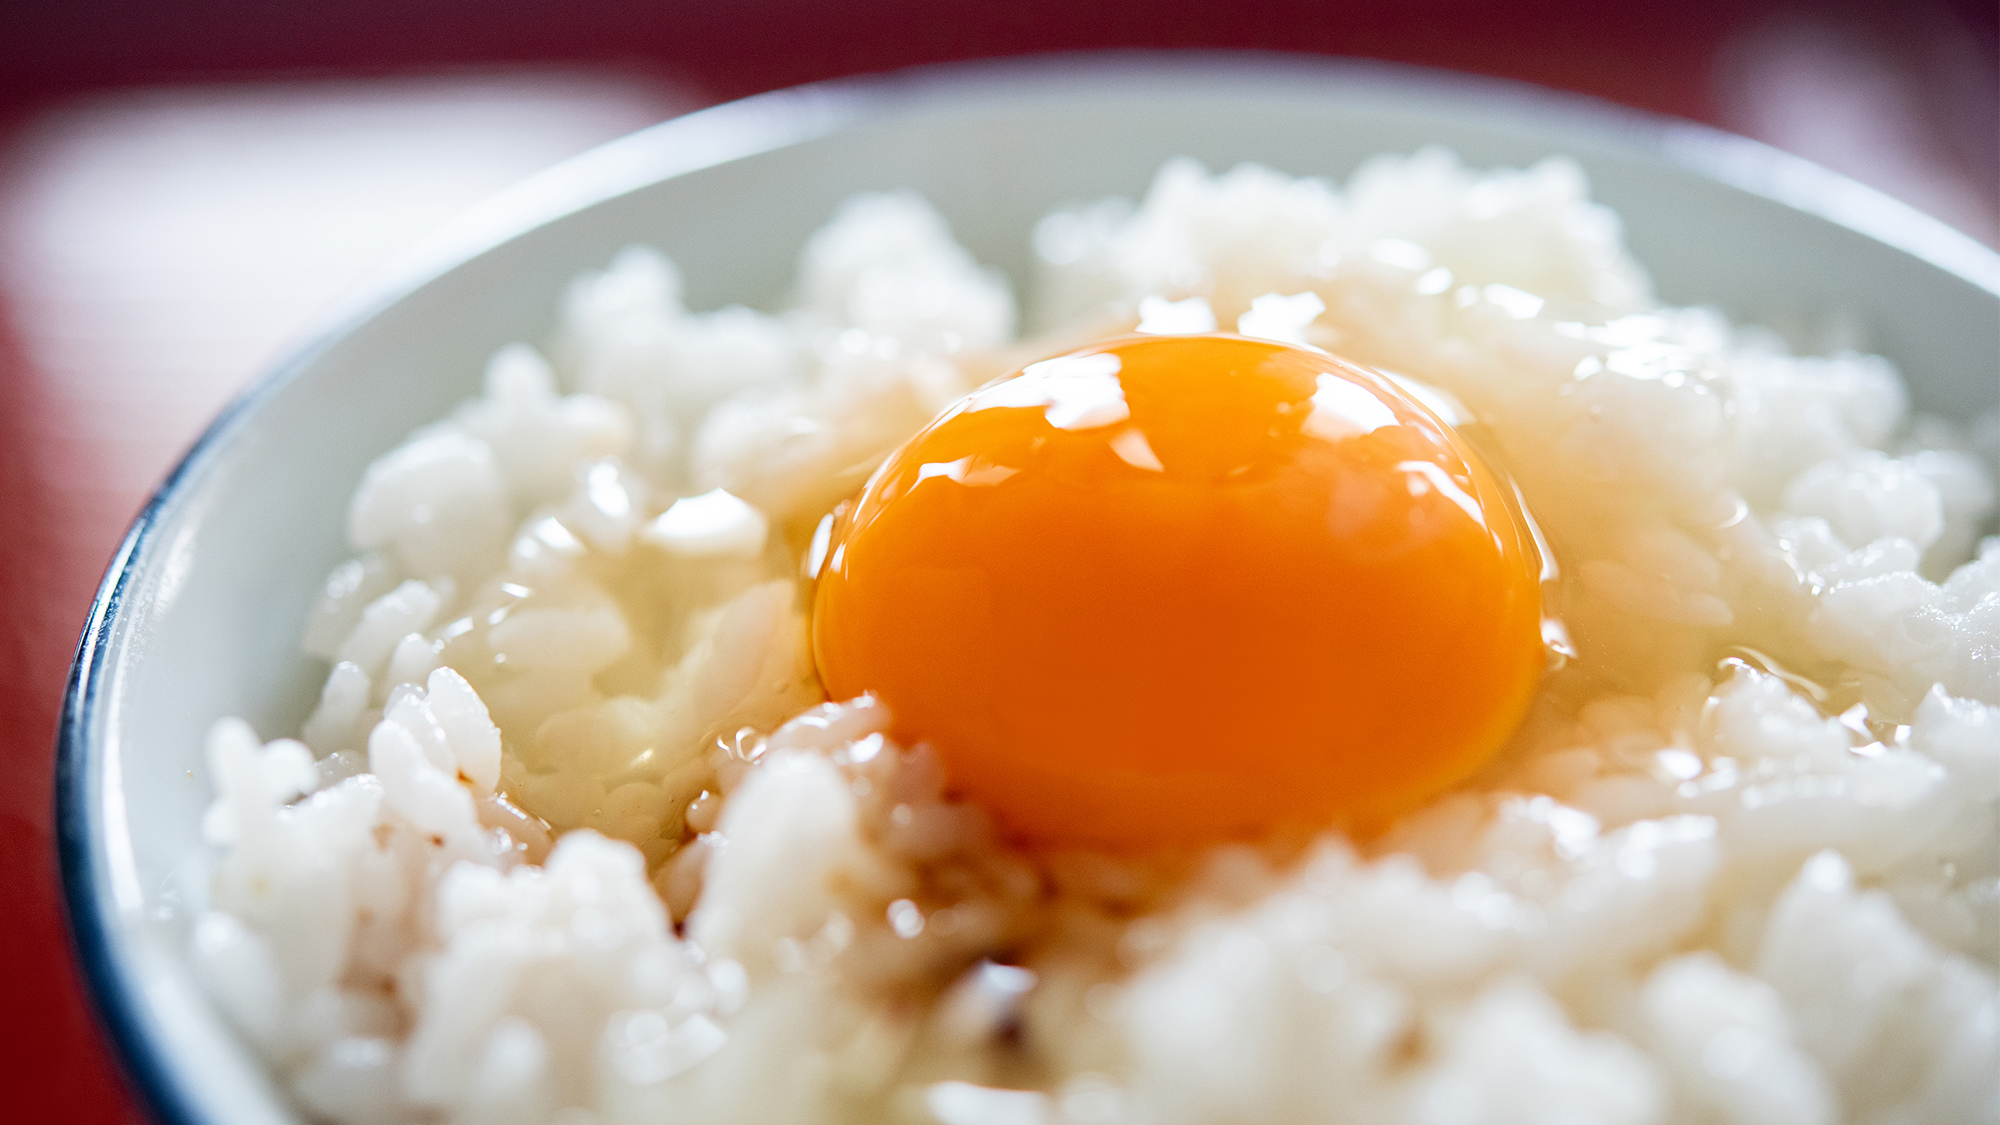 【朝食】兵庫の行列ができる卵かけご飯のお店と同じ「丹熊」の生卵を取り寄せて提供しております